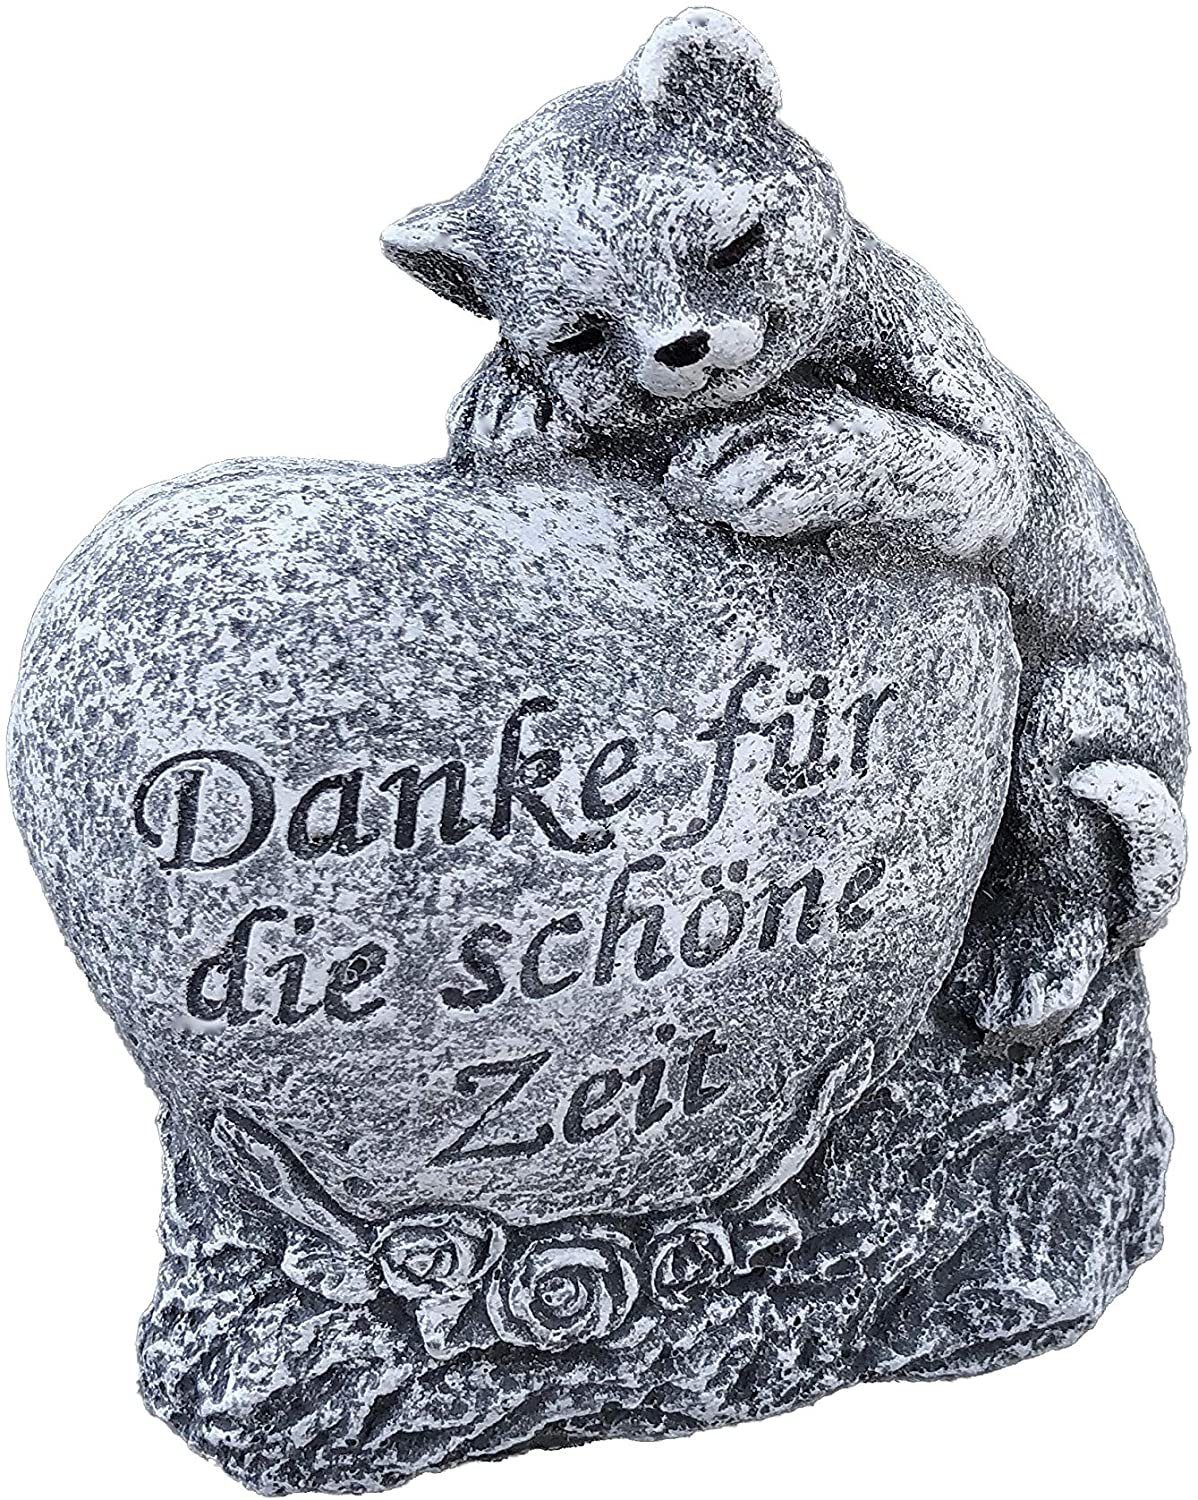 Stone and Style Gartenfigur Steinfigur Grabschmuck Katze " Danke für die schöne Zeit "